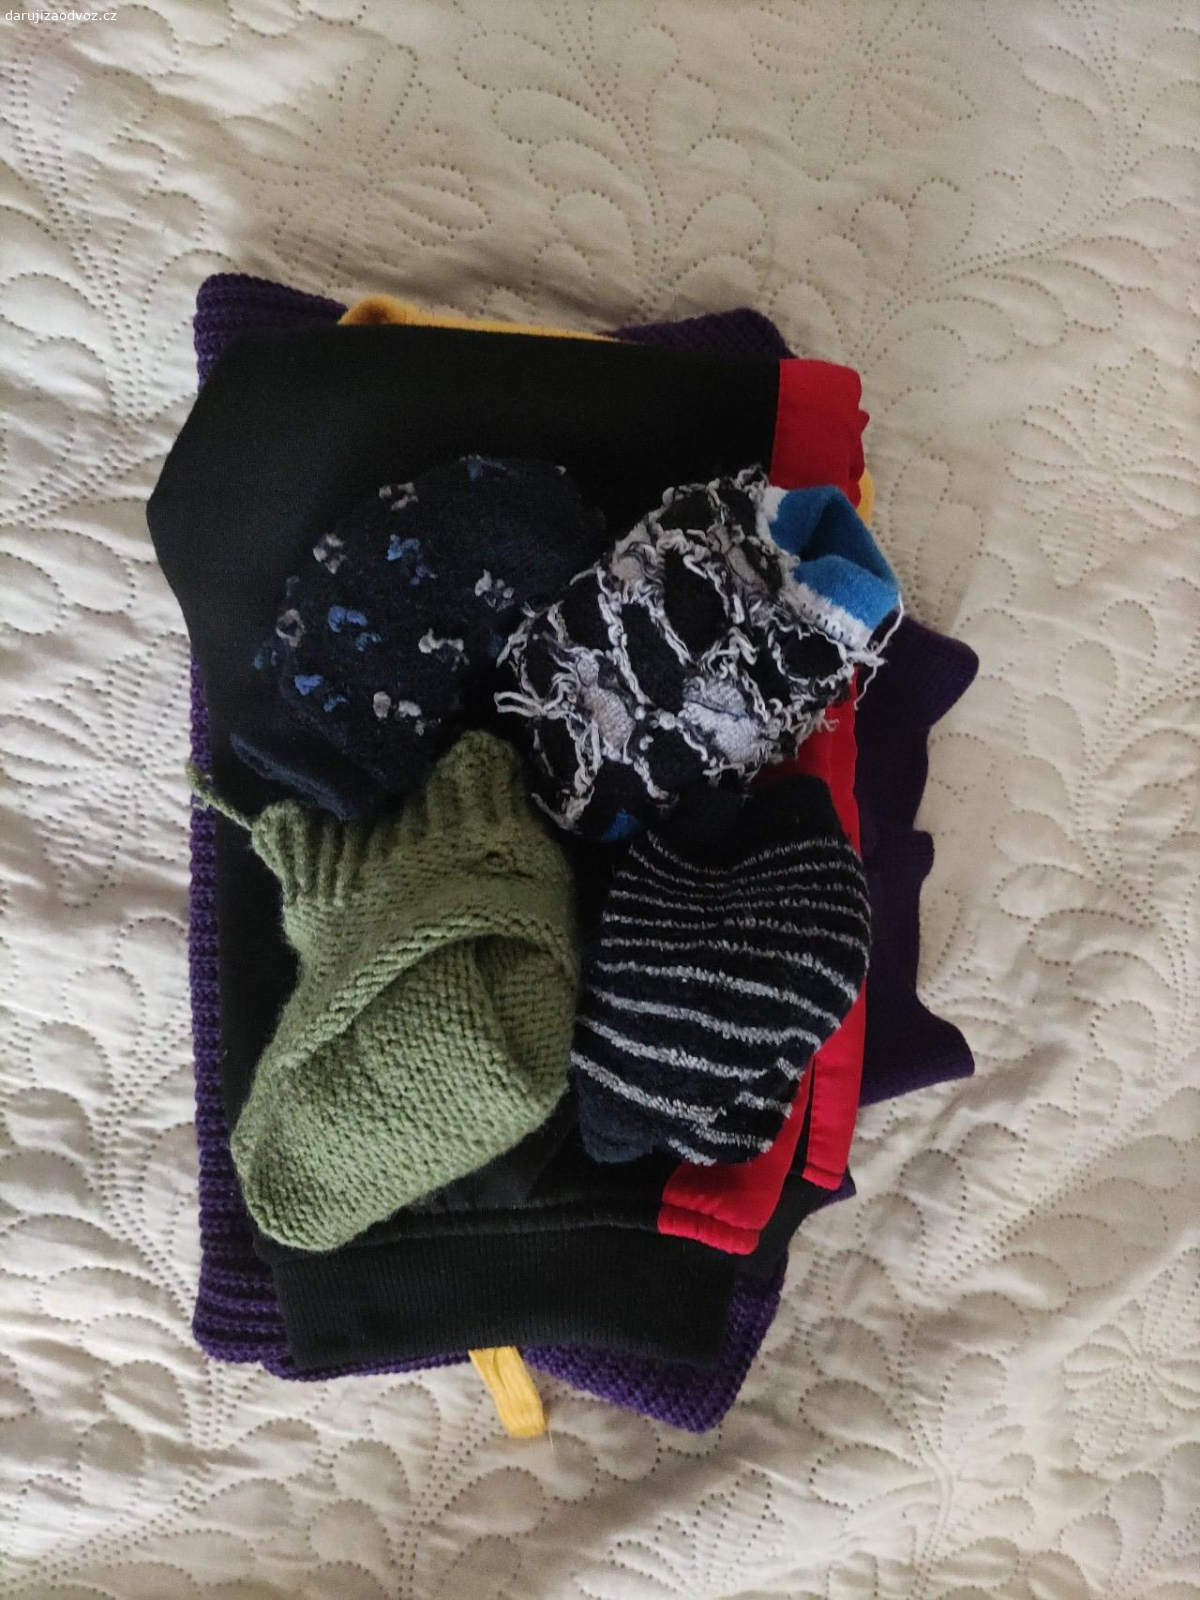 oblečenie pre chlapčeka 98/110. 2 ks teplákov, 1 sveter, 4 hrubšie ponožky. skôr na doma/ ihrisko